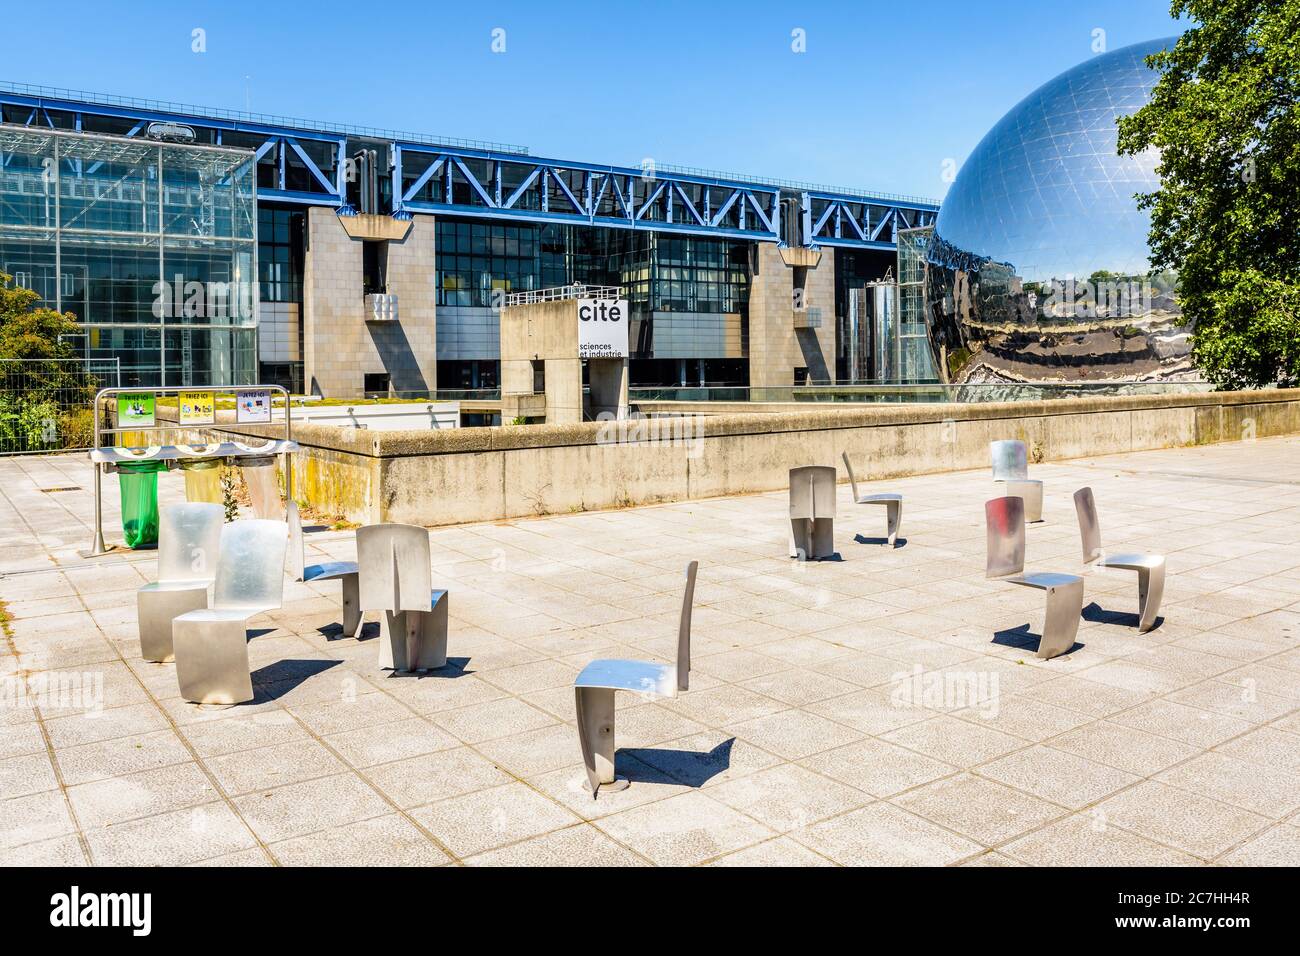 The Cite des Sciences et de l'Industrie building, a science museum, with La Geode spheric theater located in the Parc de la Villette in Paris, France. Stock Photo